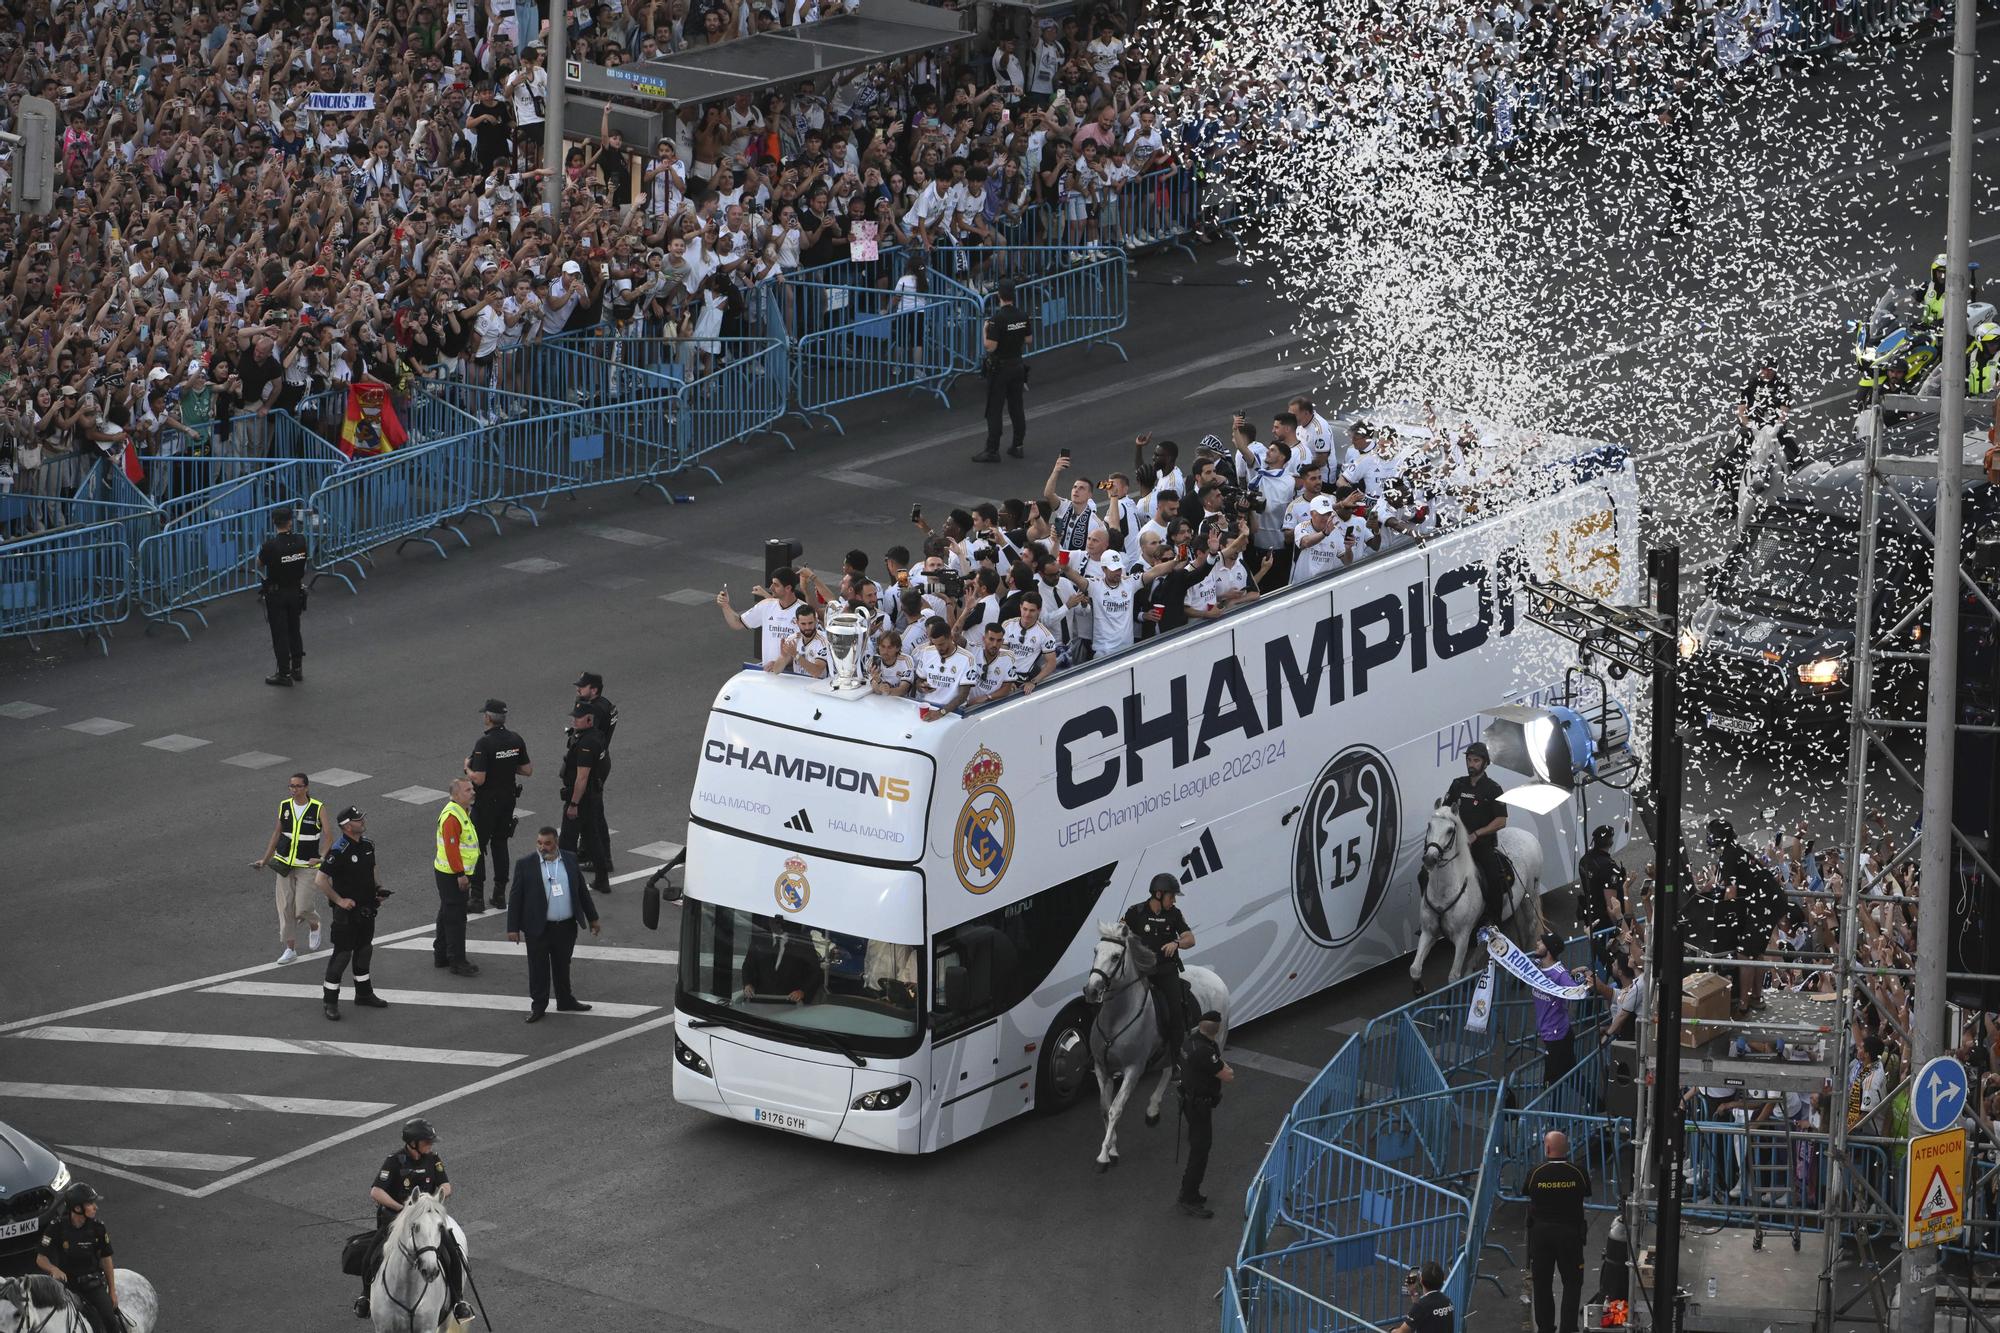 El Real Madrid celebra su 15º título de la Liga de Campeones